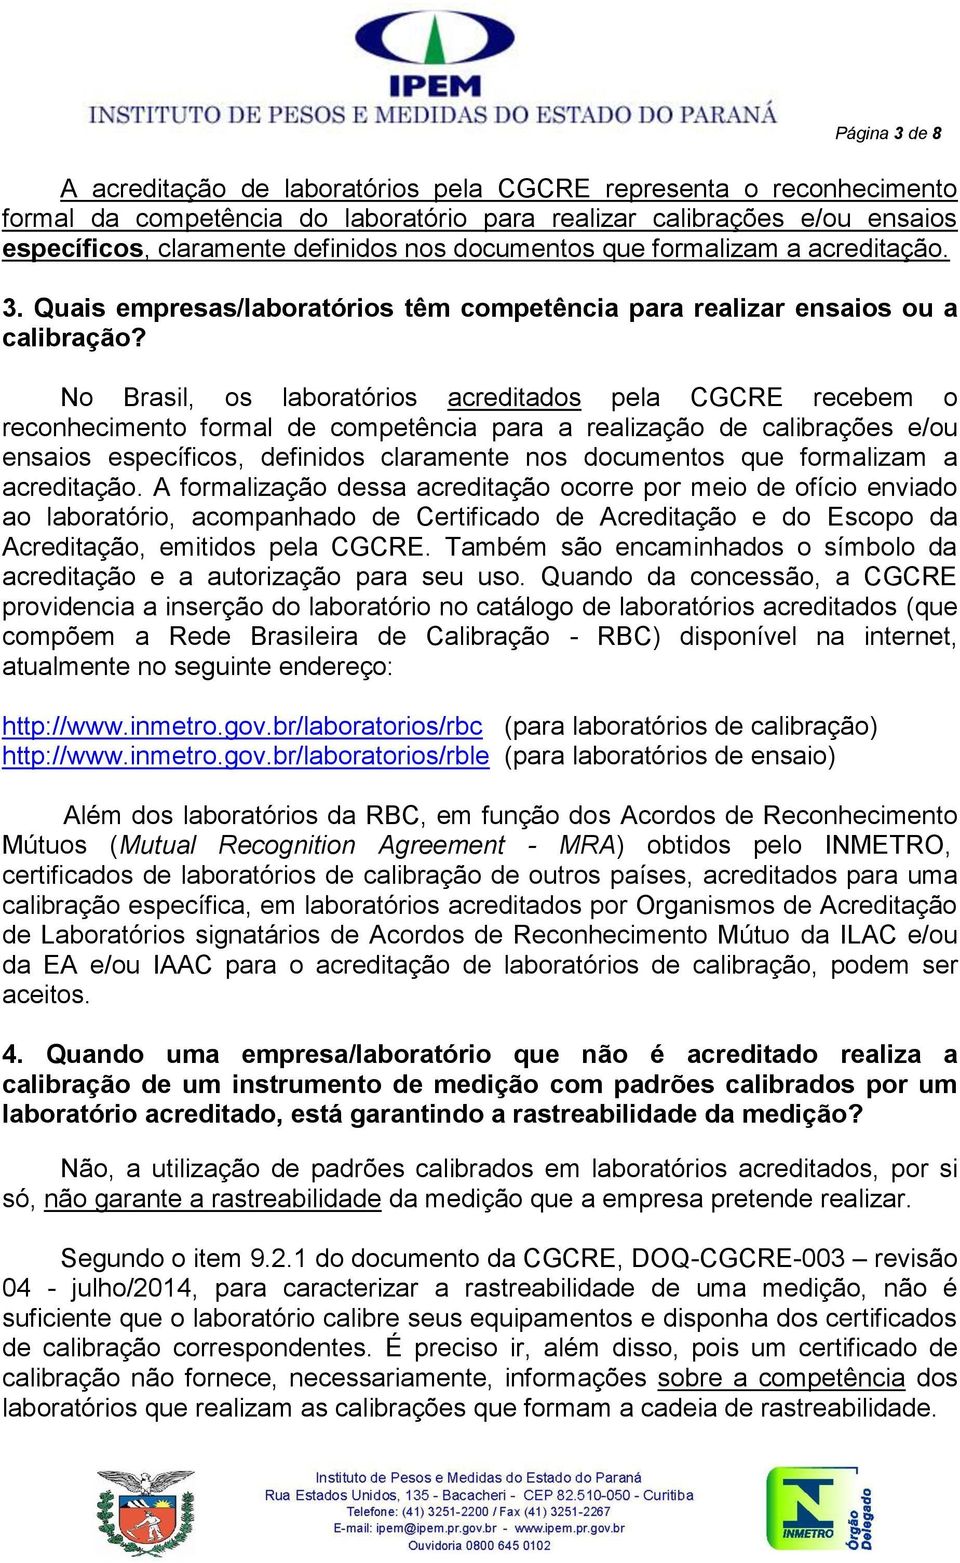 No Brasil, os laboratórios acreditados pela CGCRE recebem o reconhecimento formal de competência para a realização de calibrações e/ou ensaios específicos, definidos claramente nos documentos que